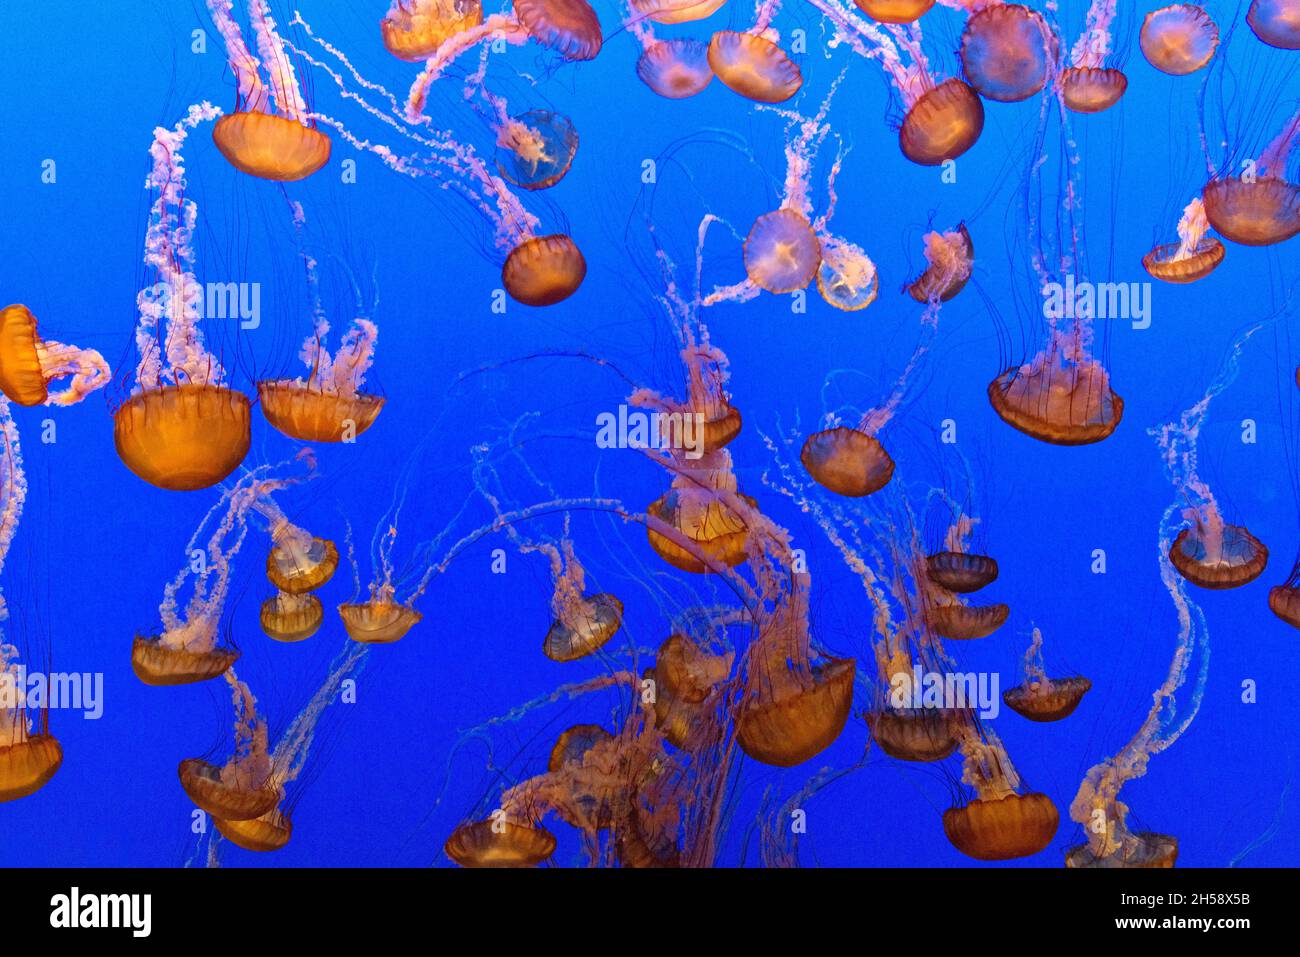 Für die Darstellung von Quallen verwendet das Monterey Bay Aquarium einen Kreisel-Tank, der eine kreisförmige Strömung erzeugt, um die Quallen zu stützen und aufzuhängen. Original im Stockfoto